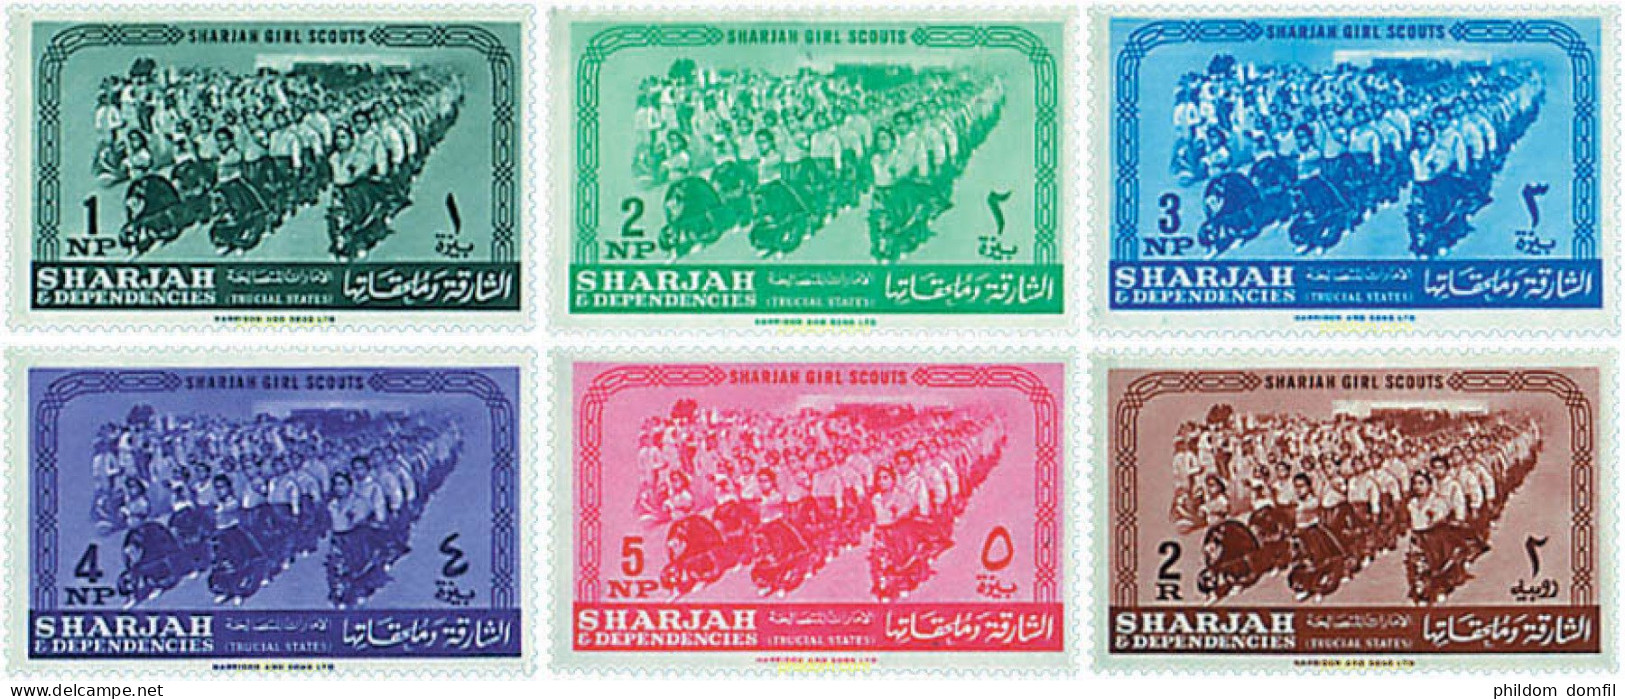 240831 MNH SHARJAH 1964 ESCULTISMO FEMENINO - Sharjah